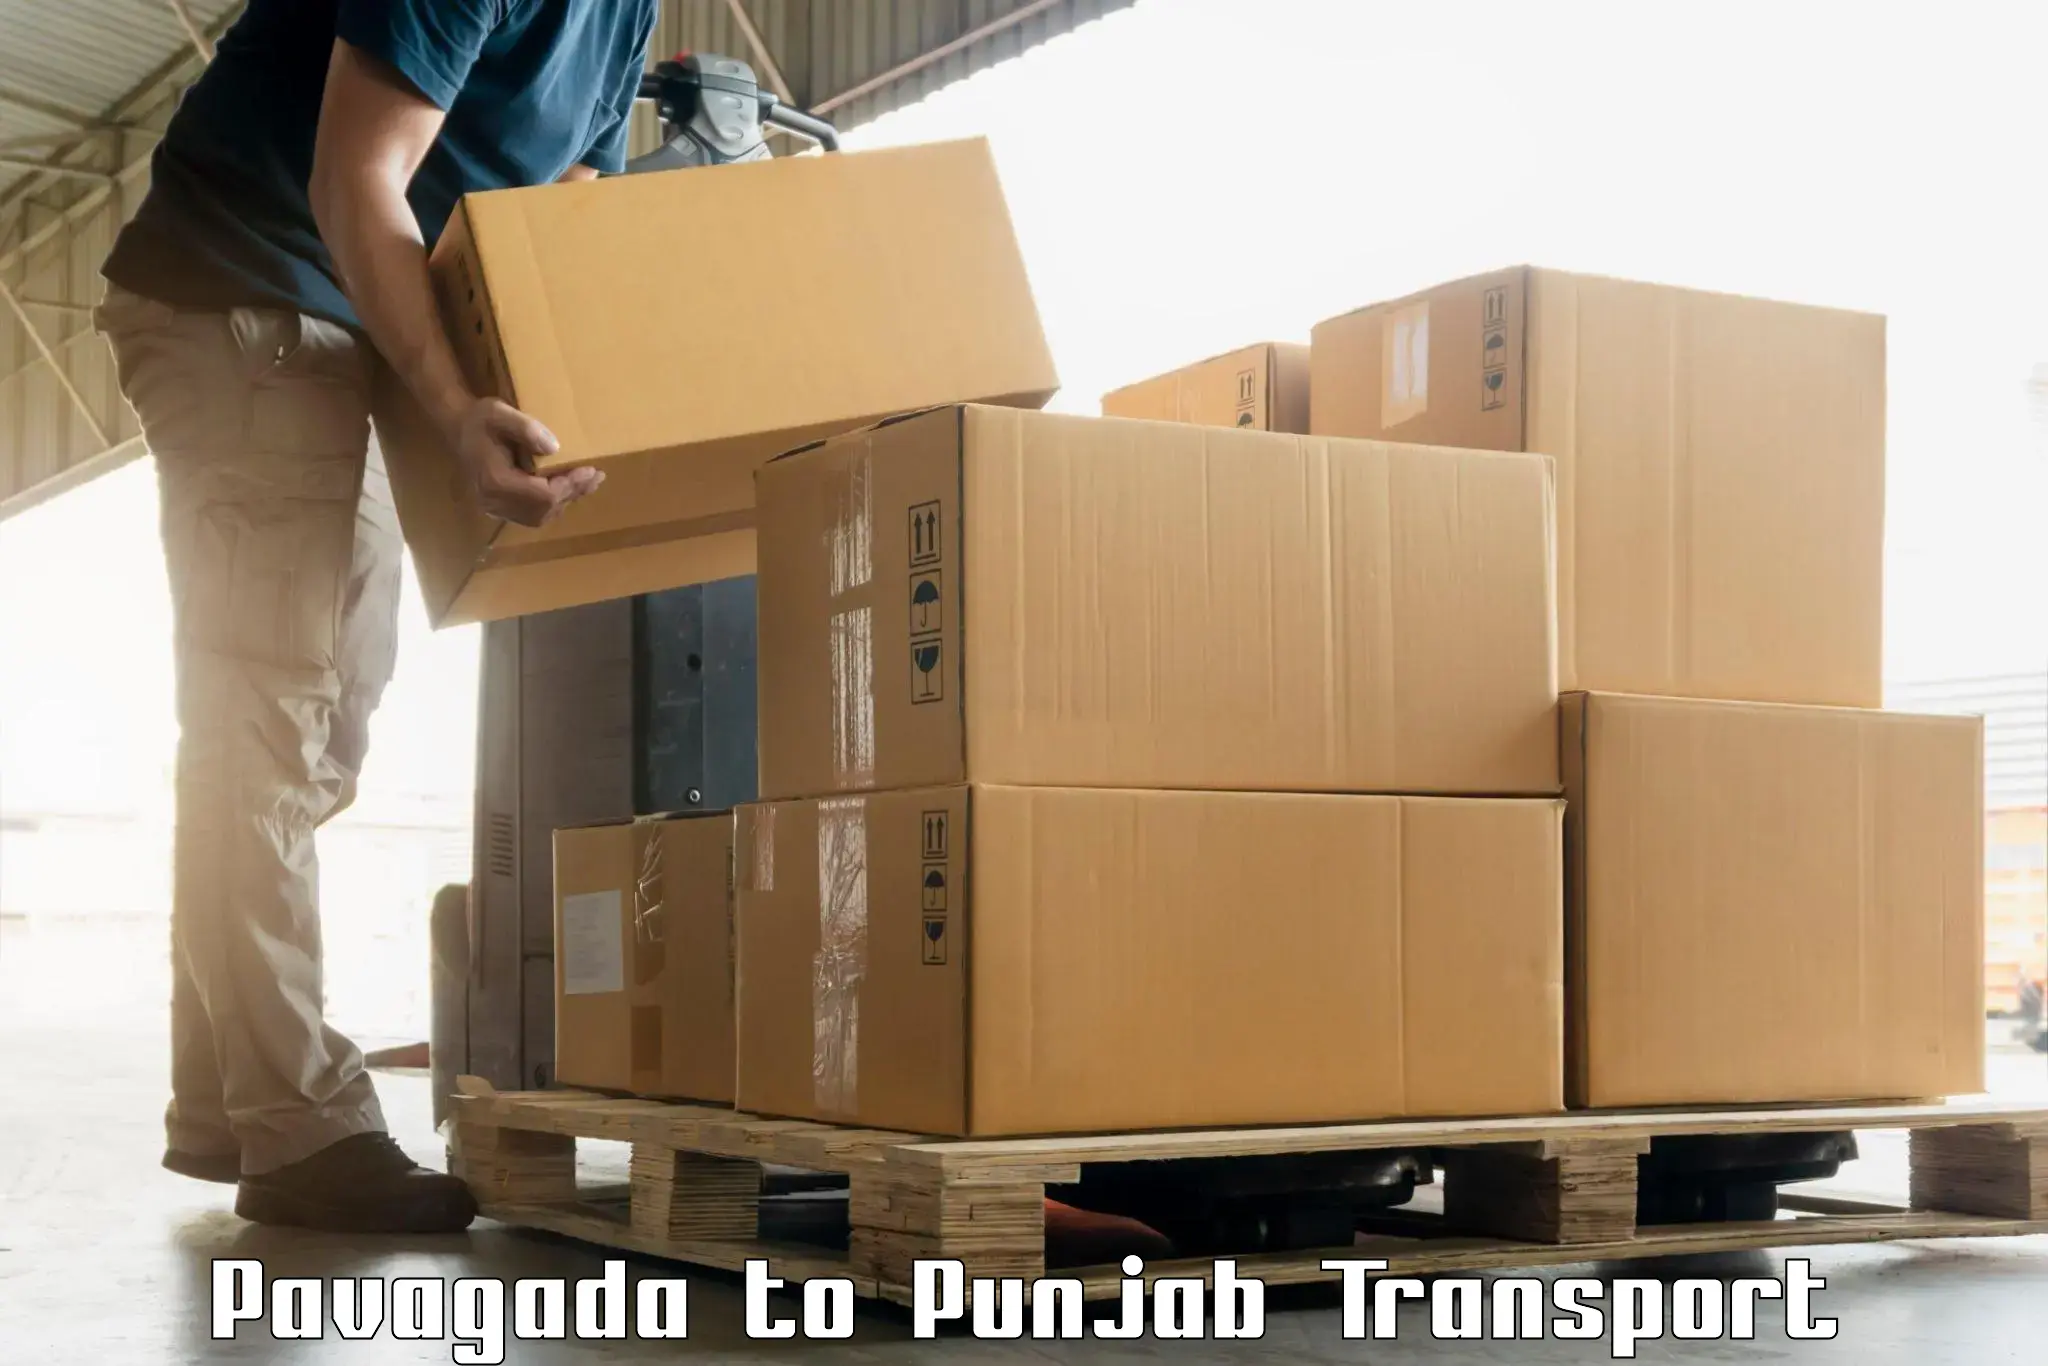 Best transport services in India Pavagada to Gurdaspur